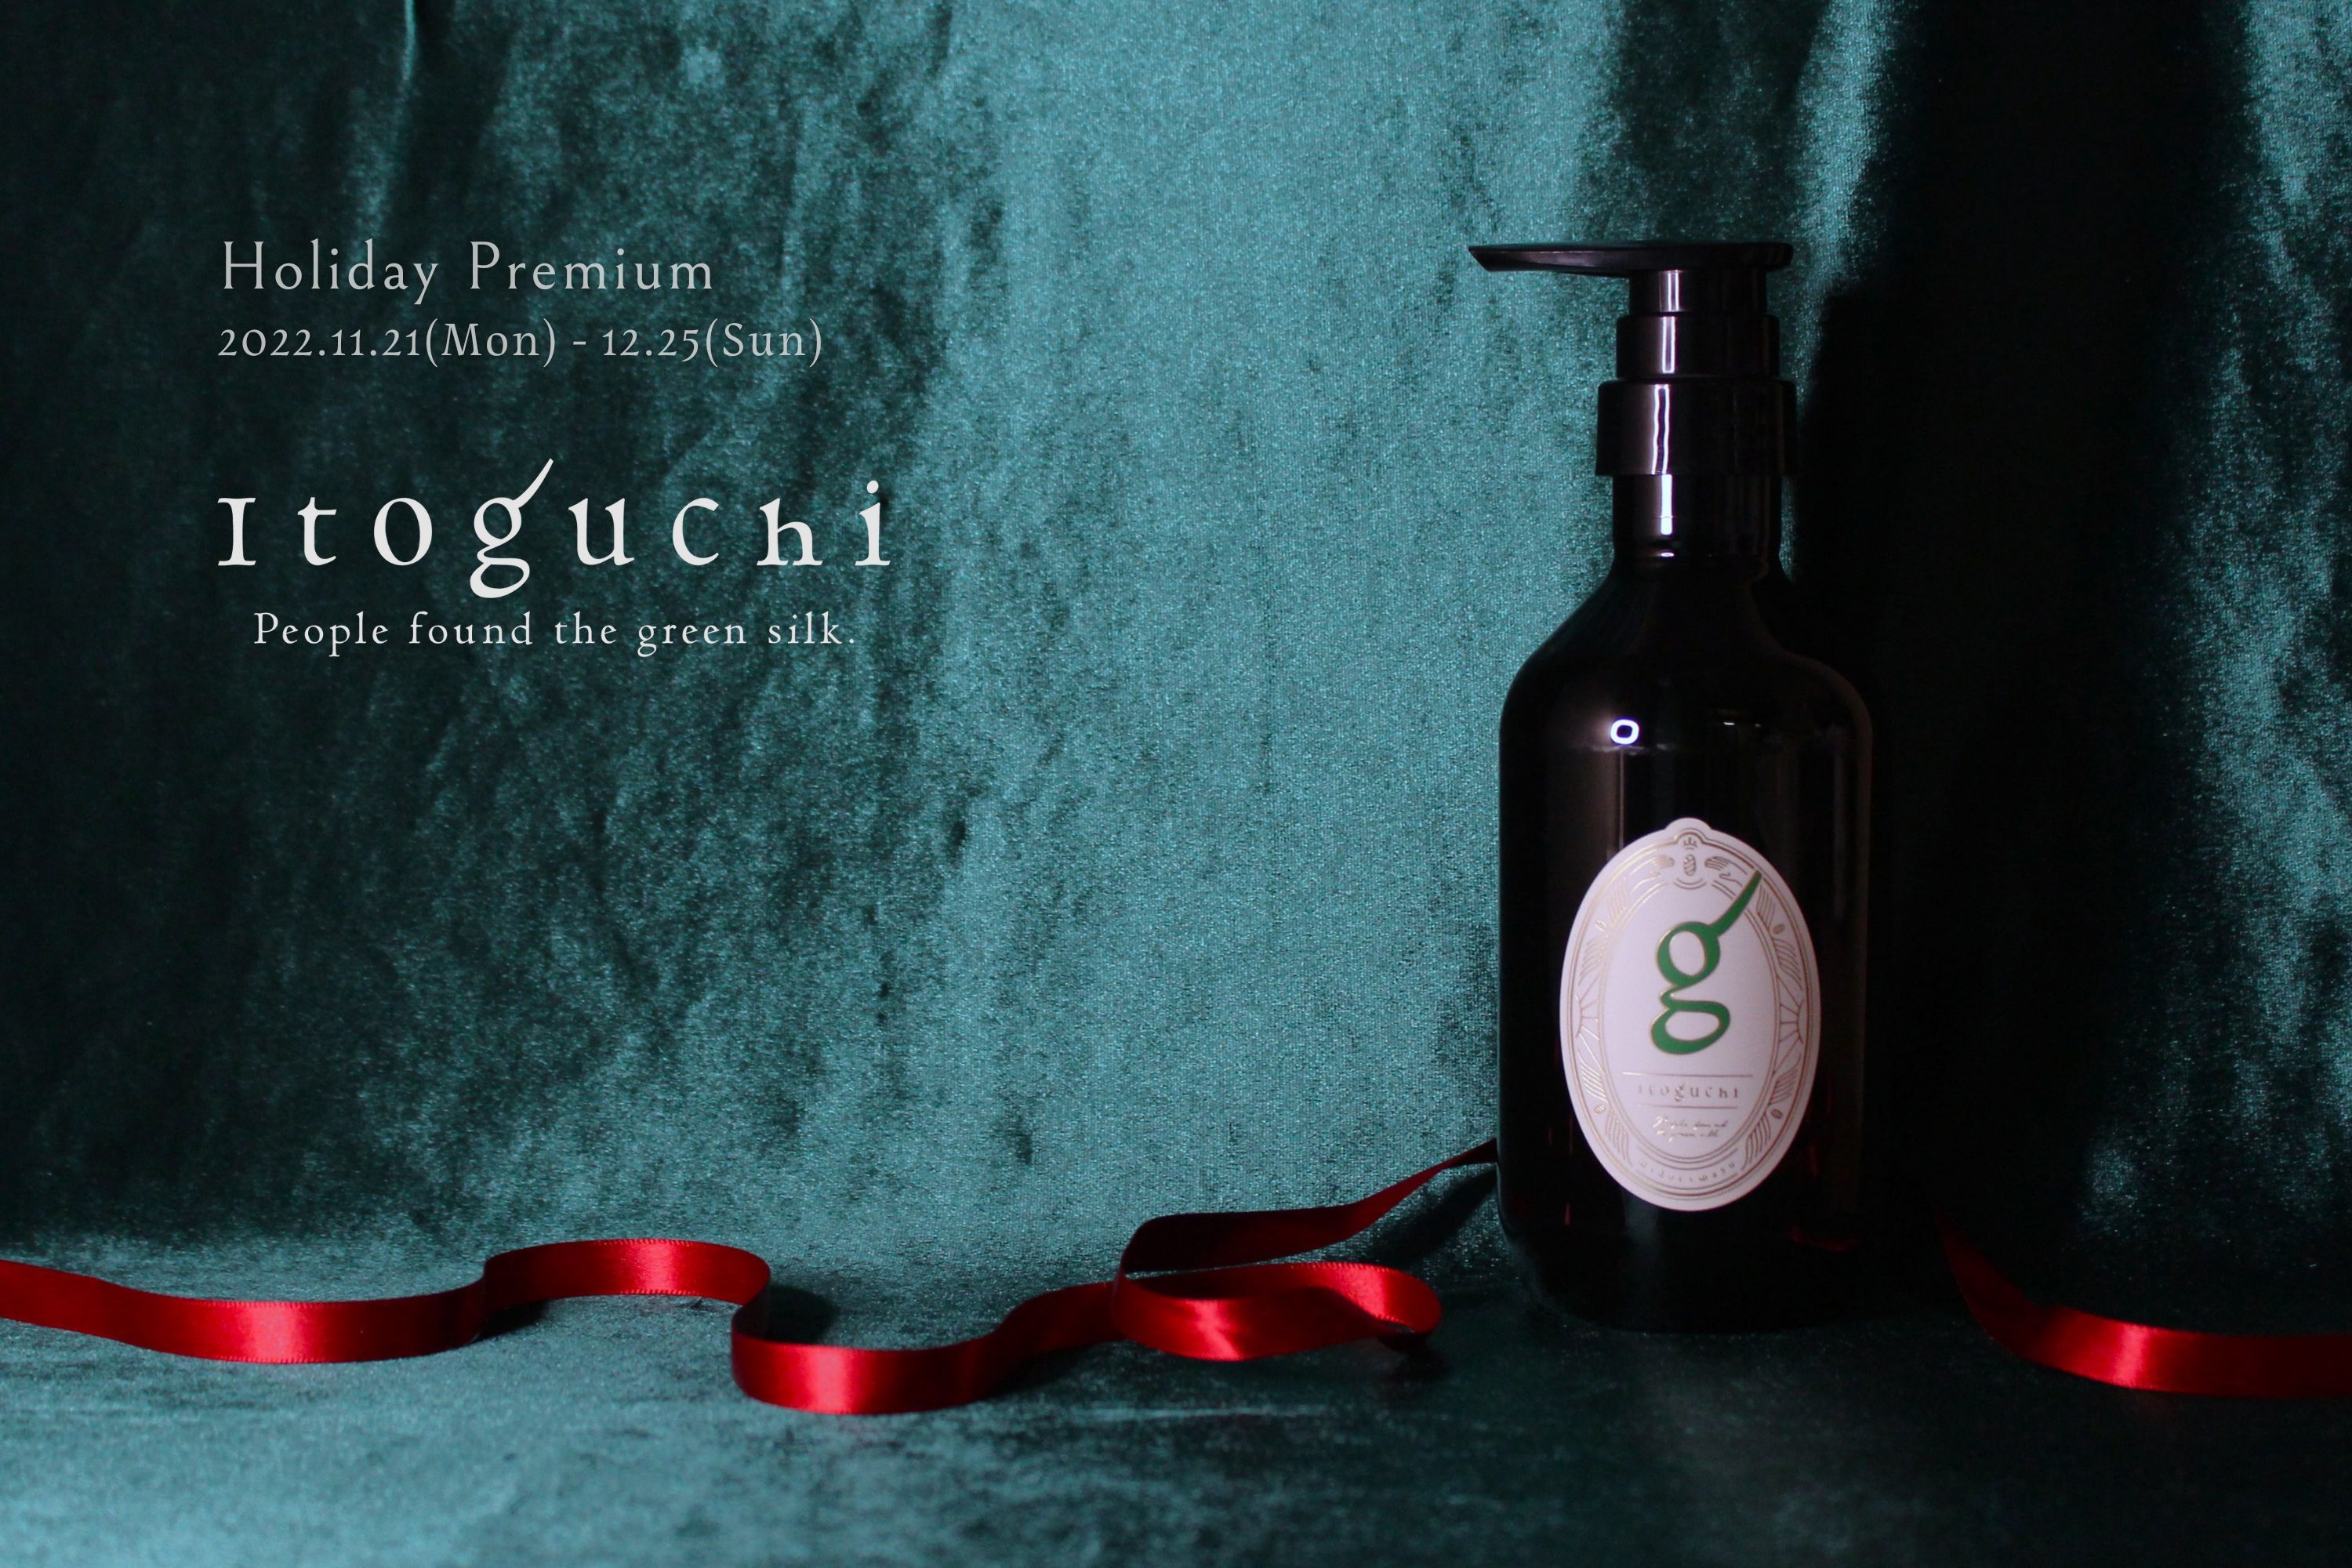 “みどりまゆ”シルクのプレミアム スキンケア ブランド
「Itoguchi」クリスマス特別企画！
数量限定セット『Holiday Premium』登場